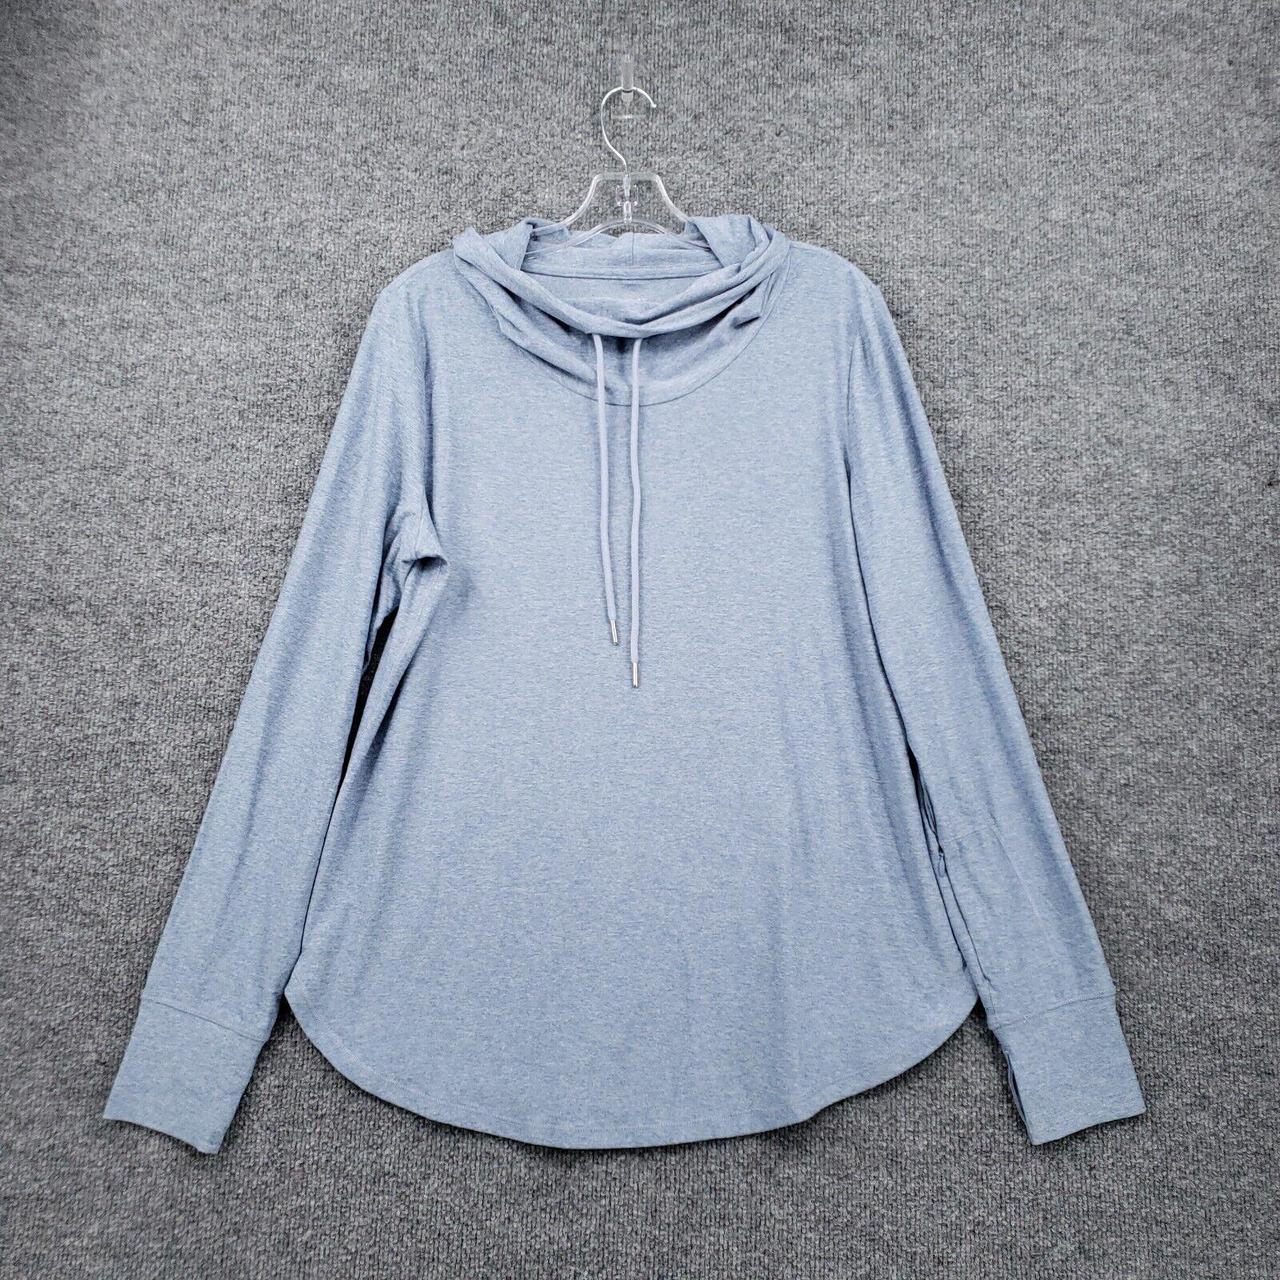 Market Women's Blue Sweatshirt